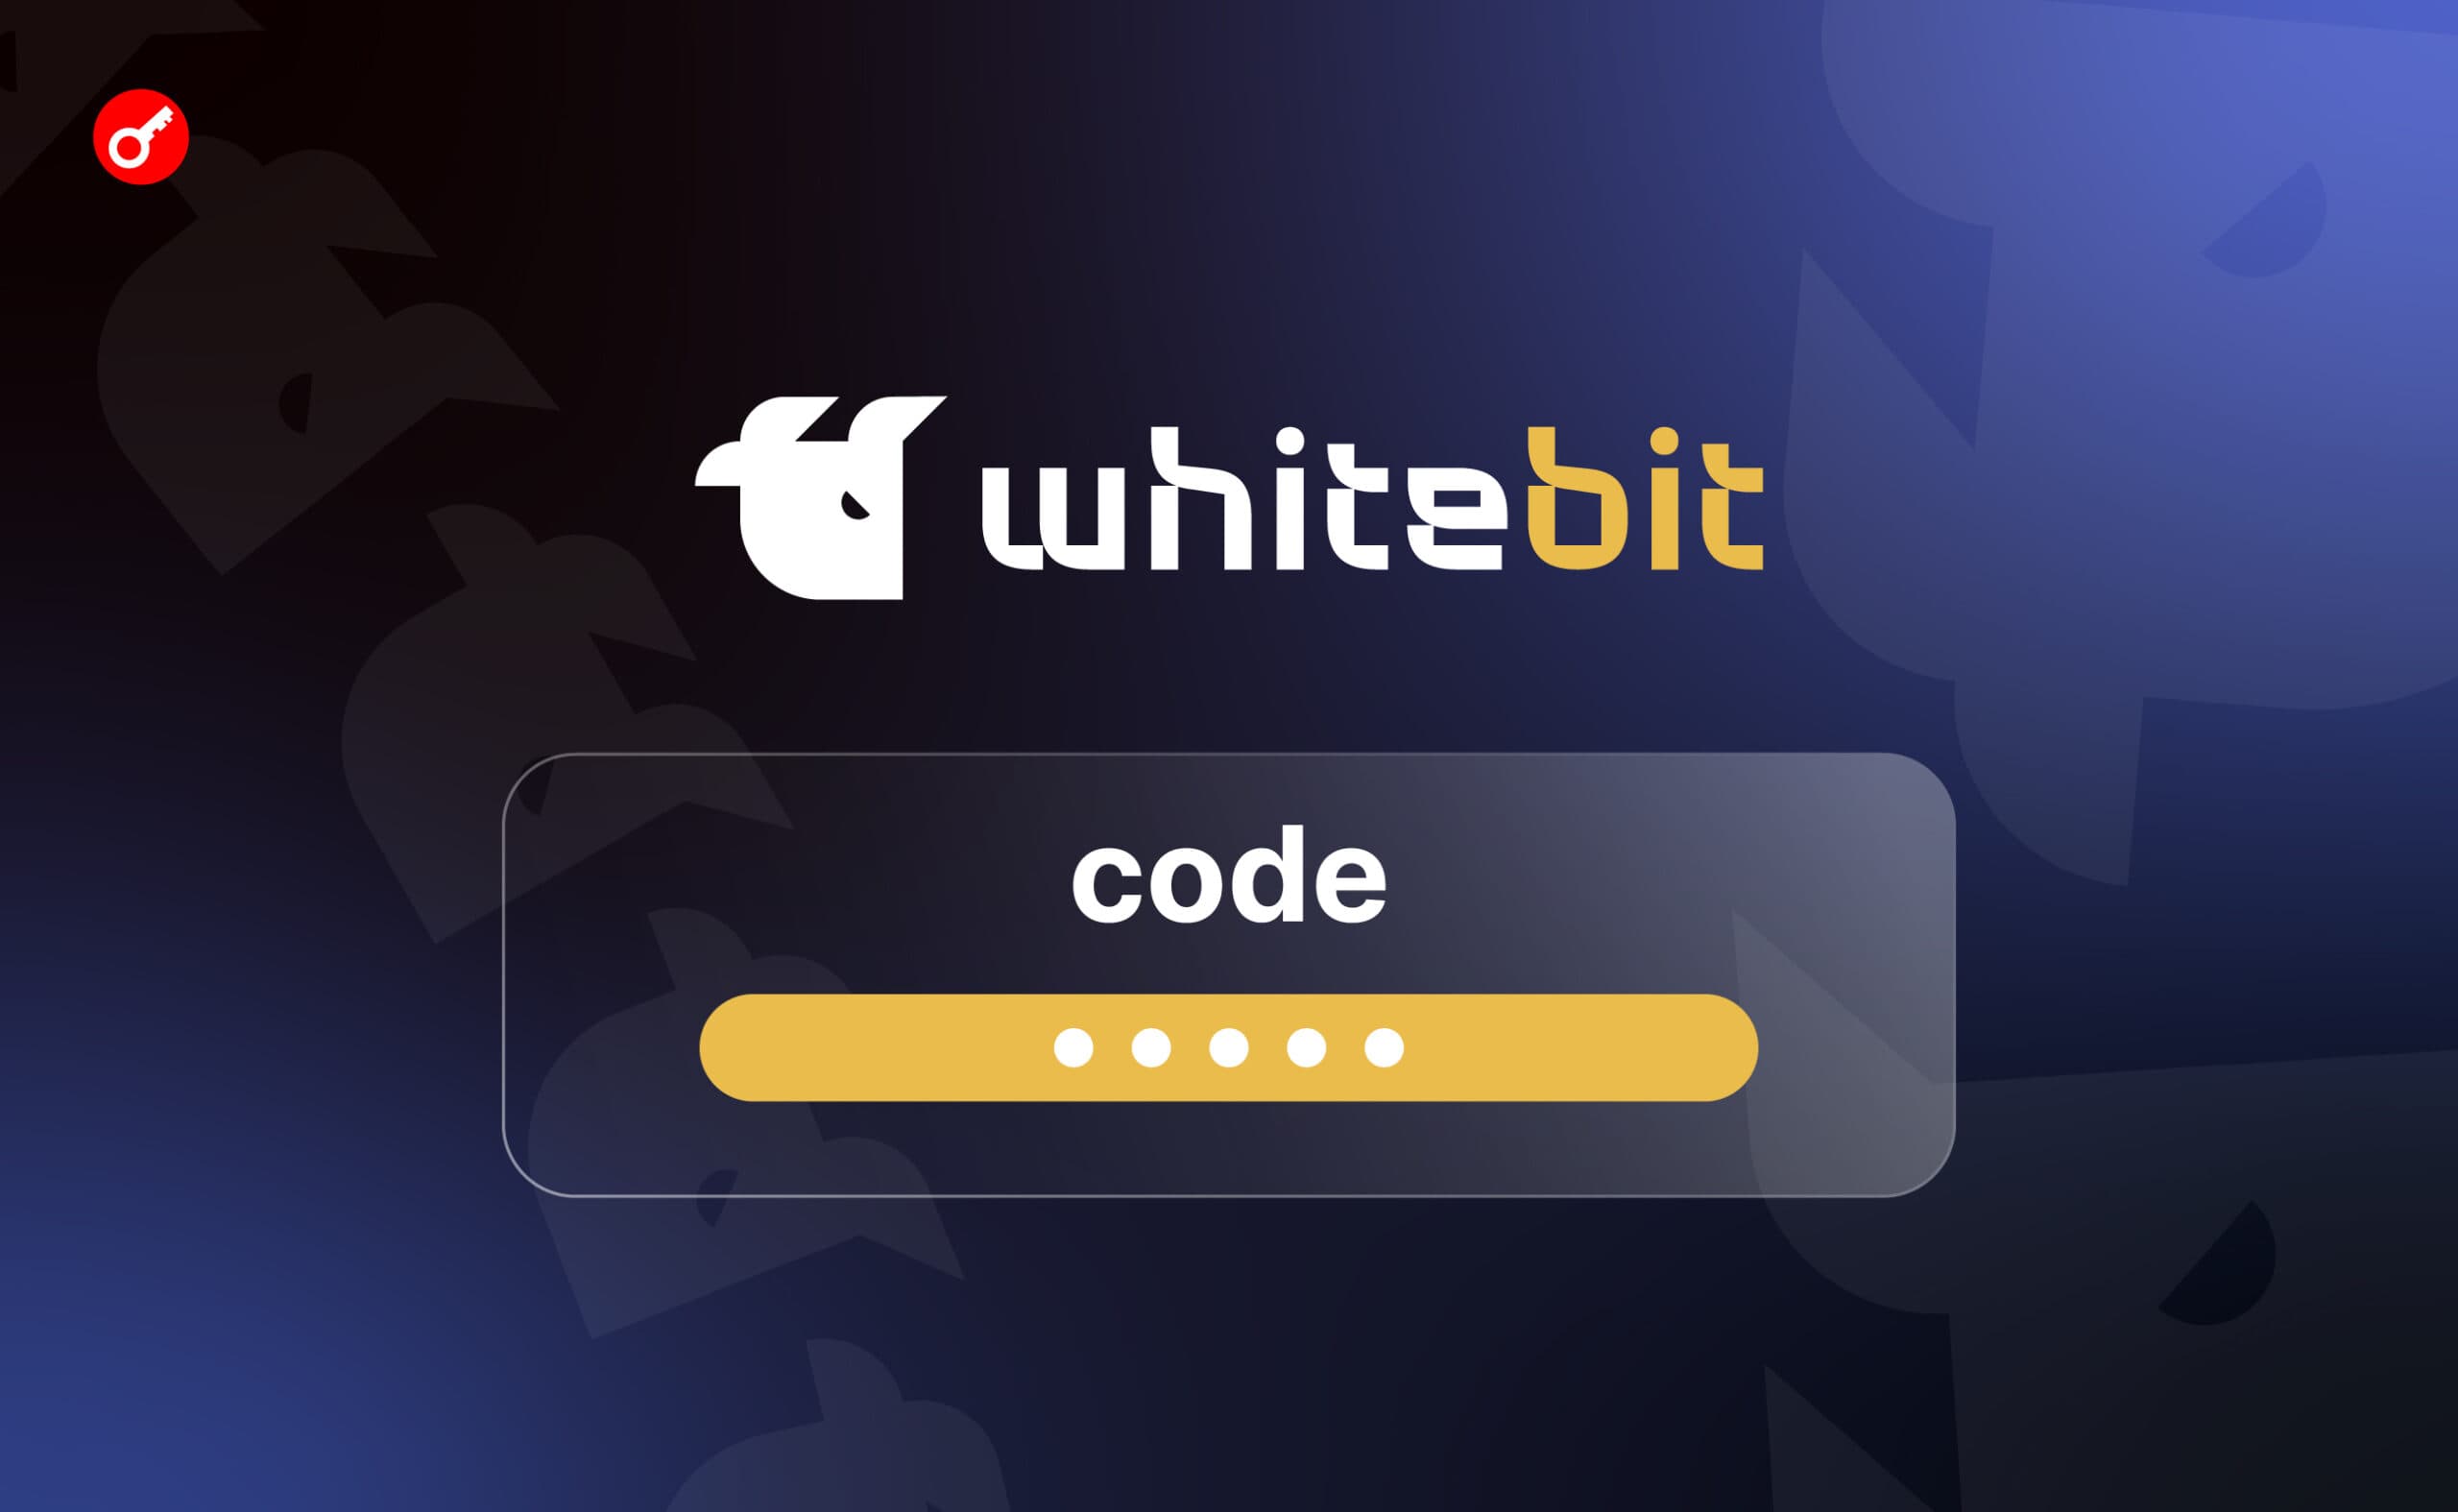 WhiteBIT-код: быстрые и конфиденциальные платежи в криптовалюте. Заглавный коллаж статьи.